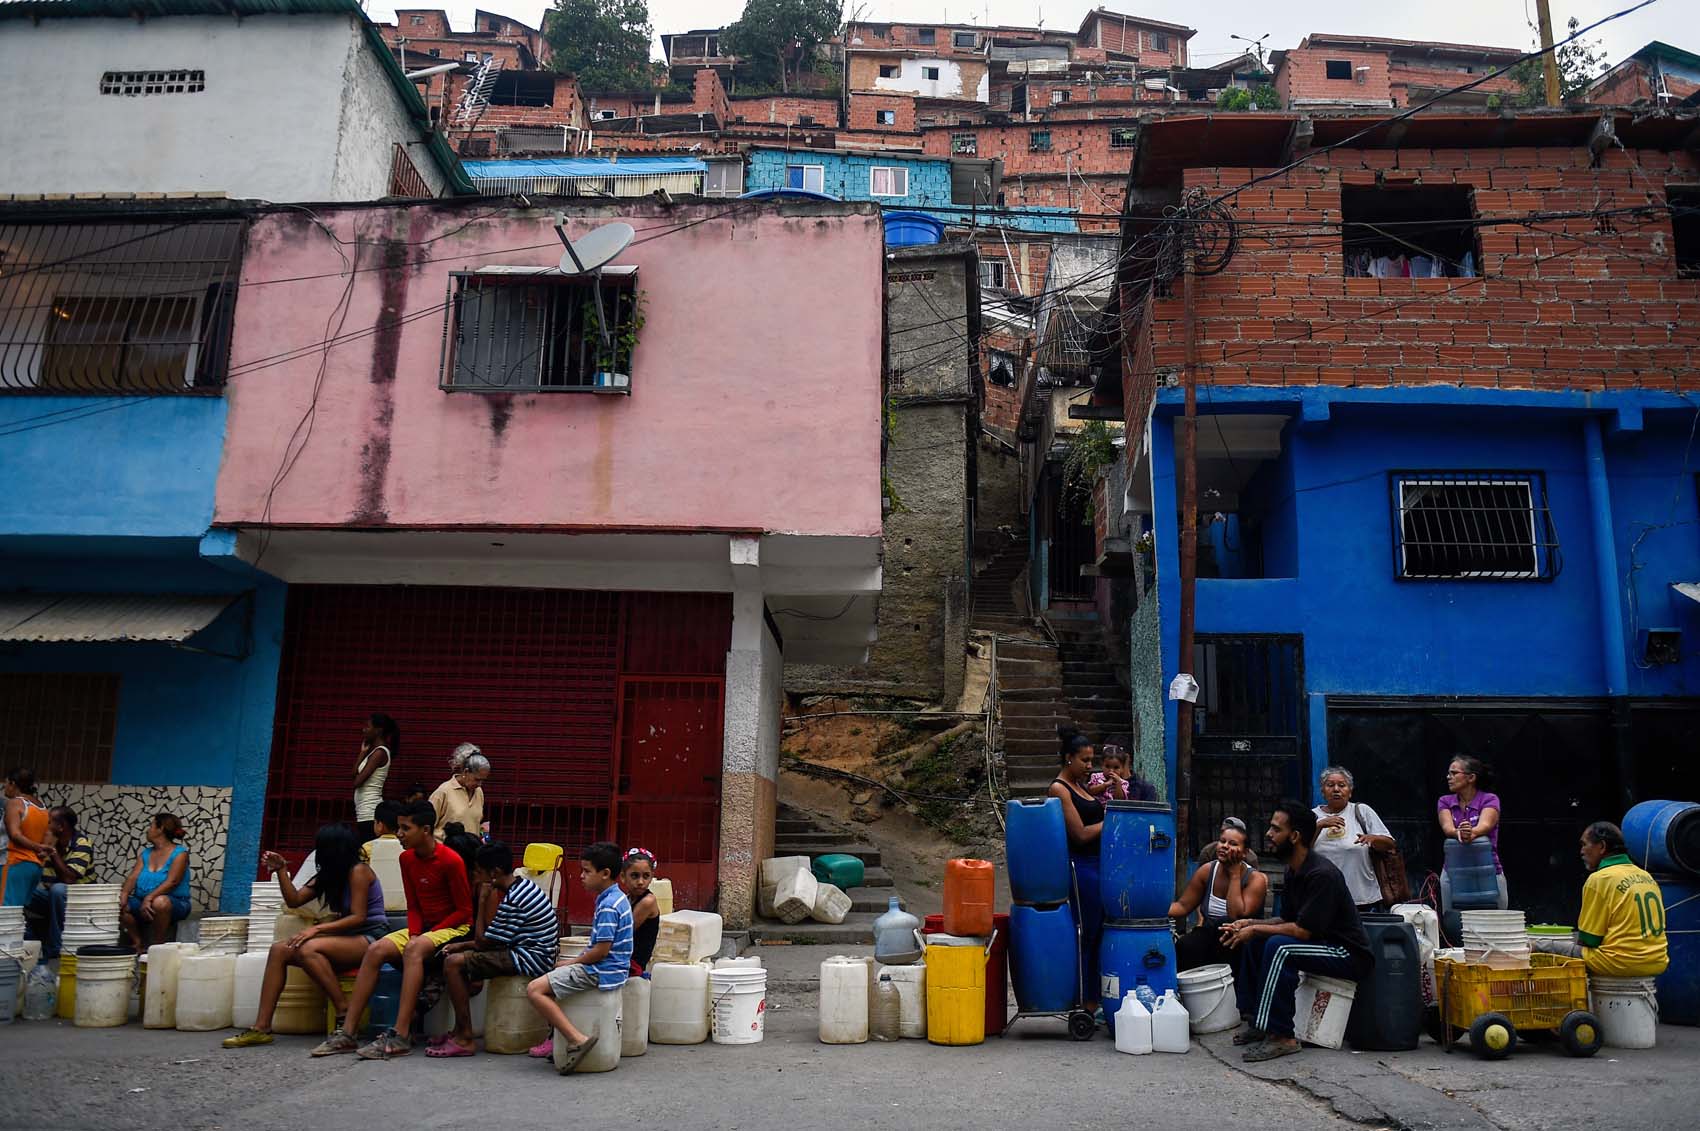 El peregrinaje del venezolano para conseguir un poco de agua (FOTOS)